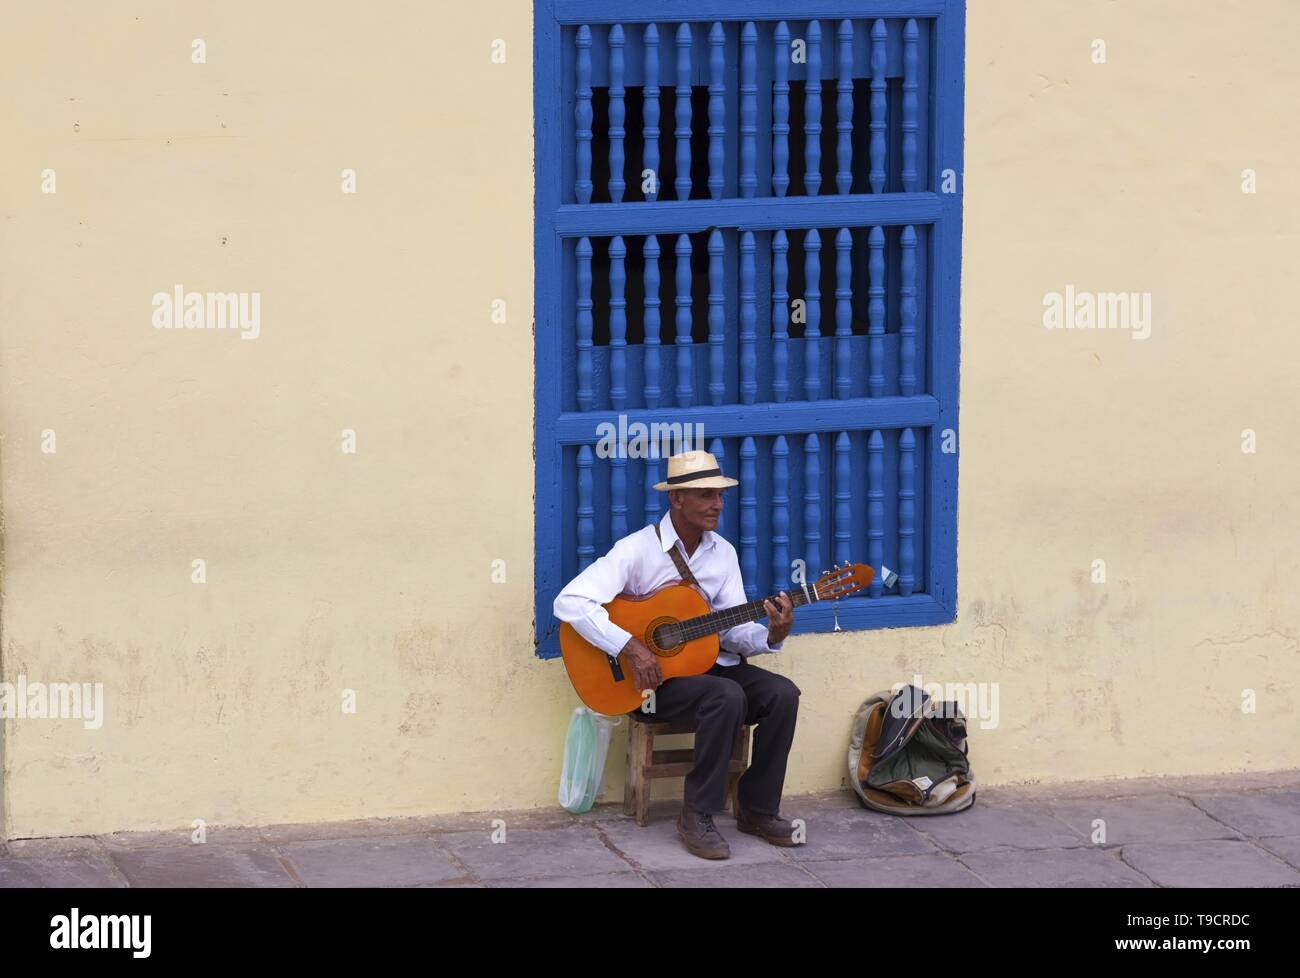 Anziani uomo cubano seduto e suonare la chitarra strumento su strade acciottolate della città vecchia di Trinidad, Cuba nei pressi di Plaza Mayor Foto Stock